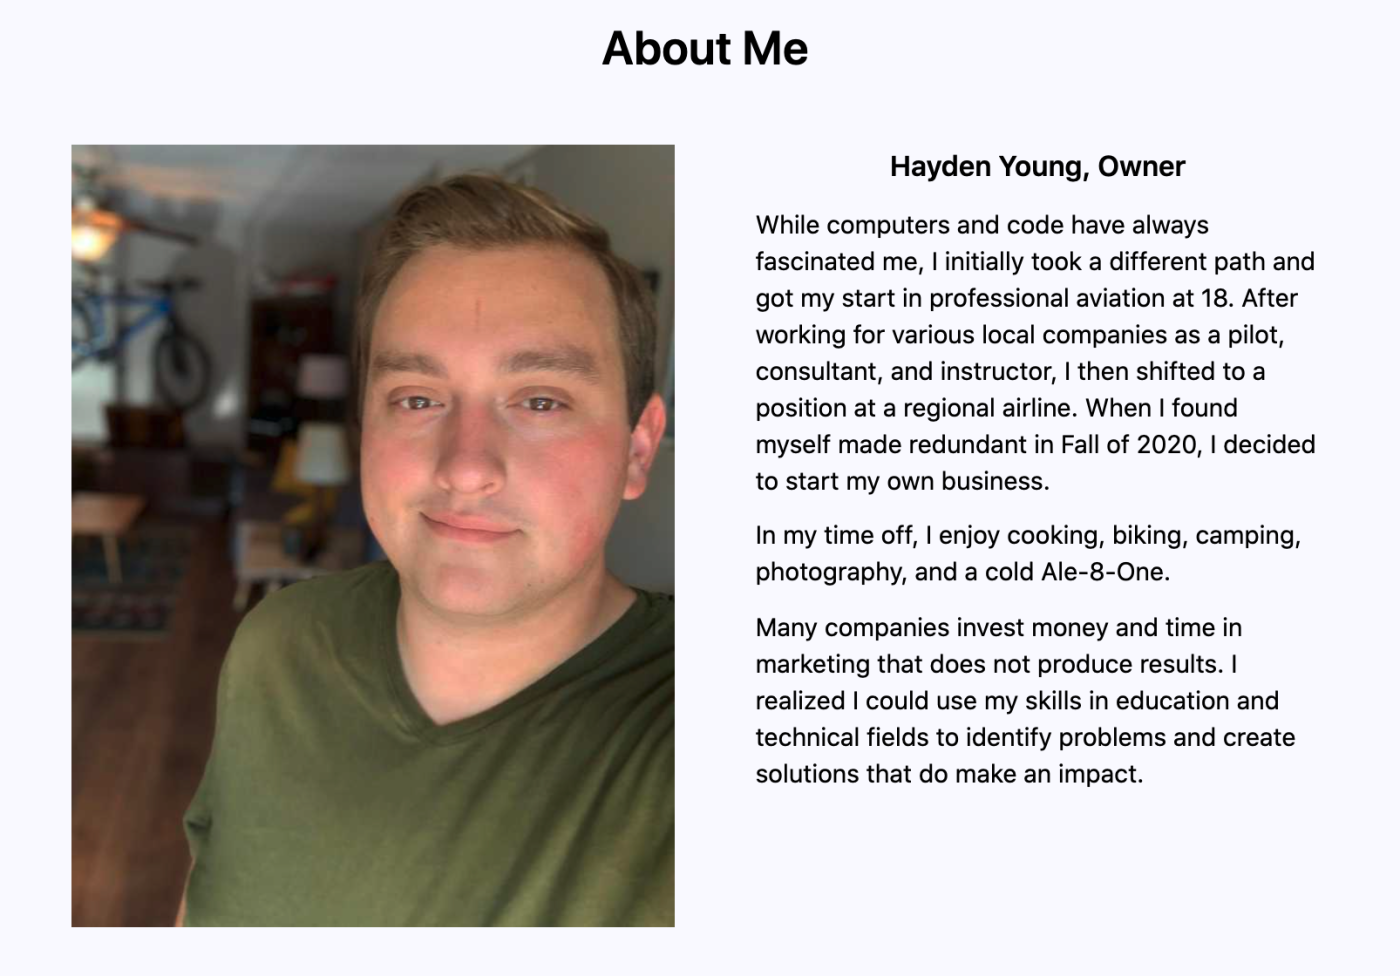 Hayden Young on his website